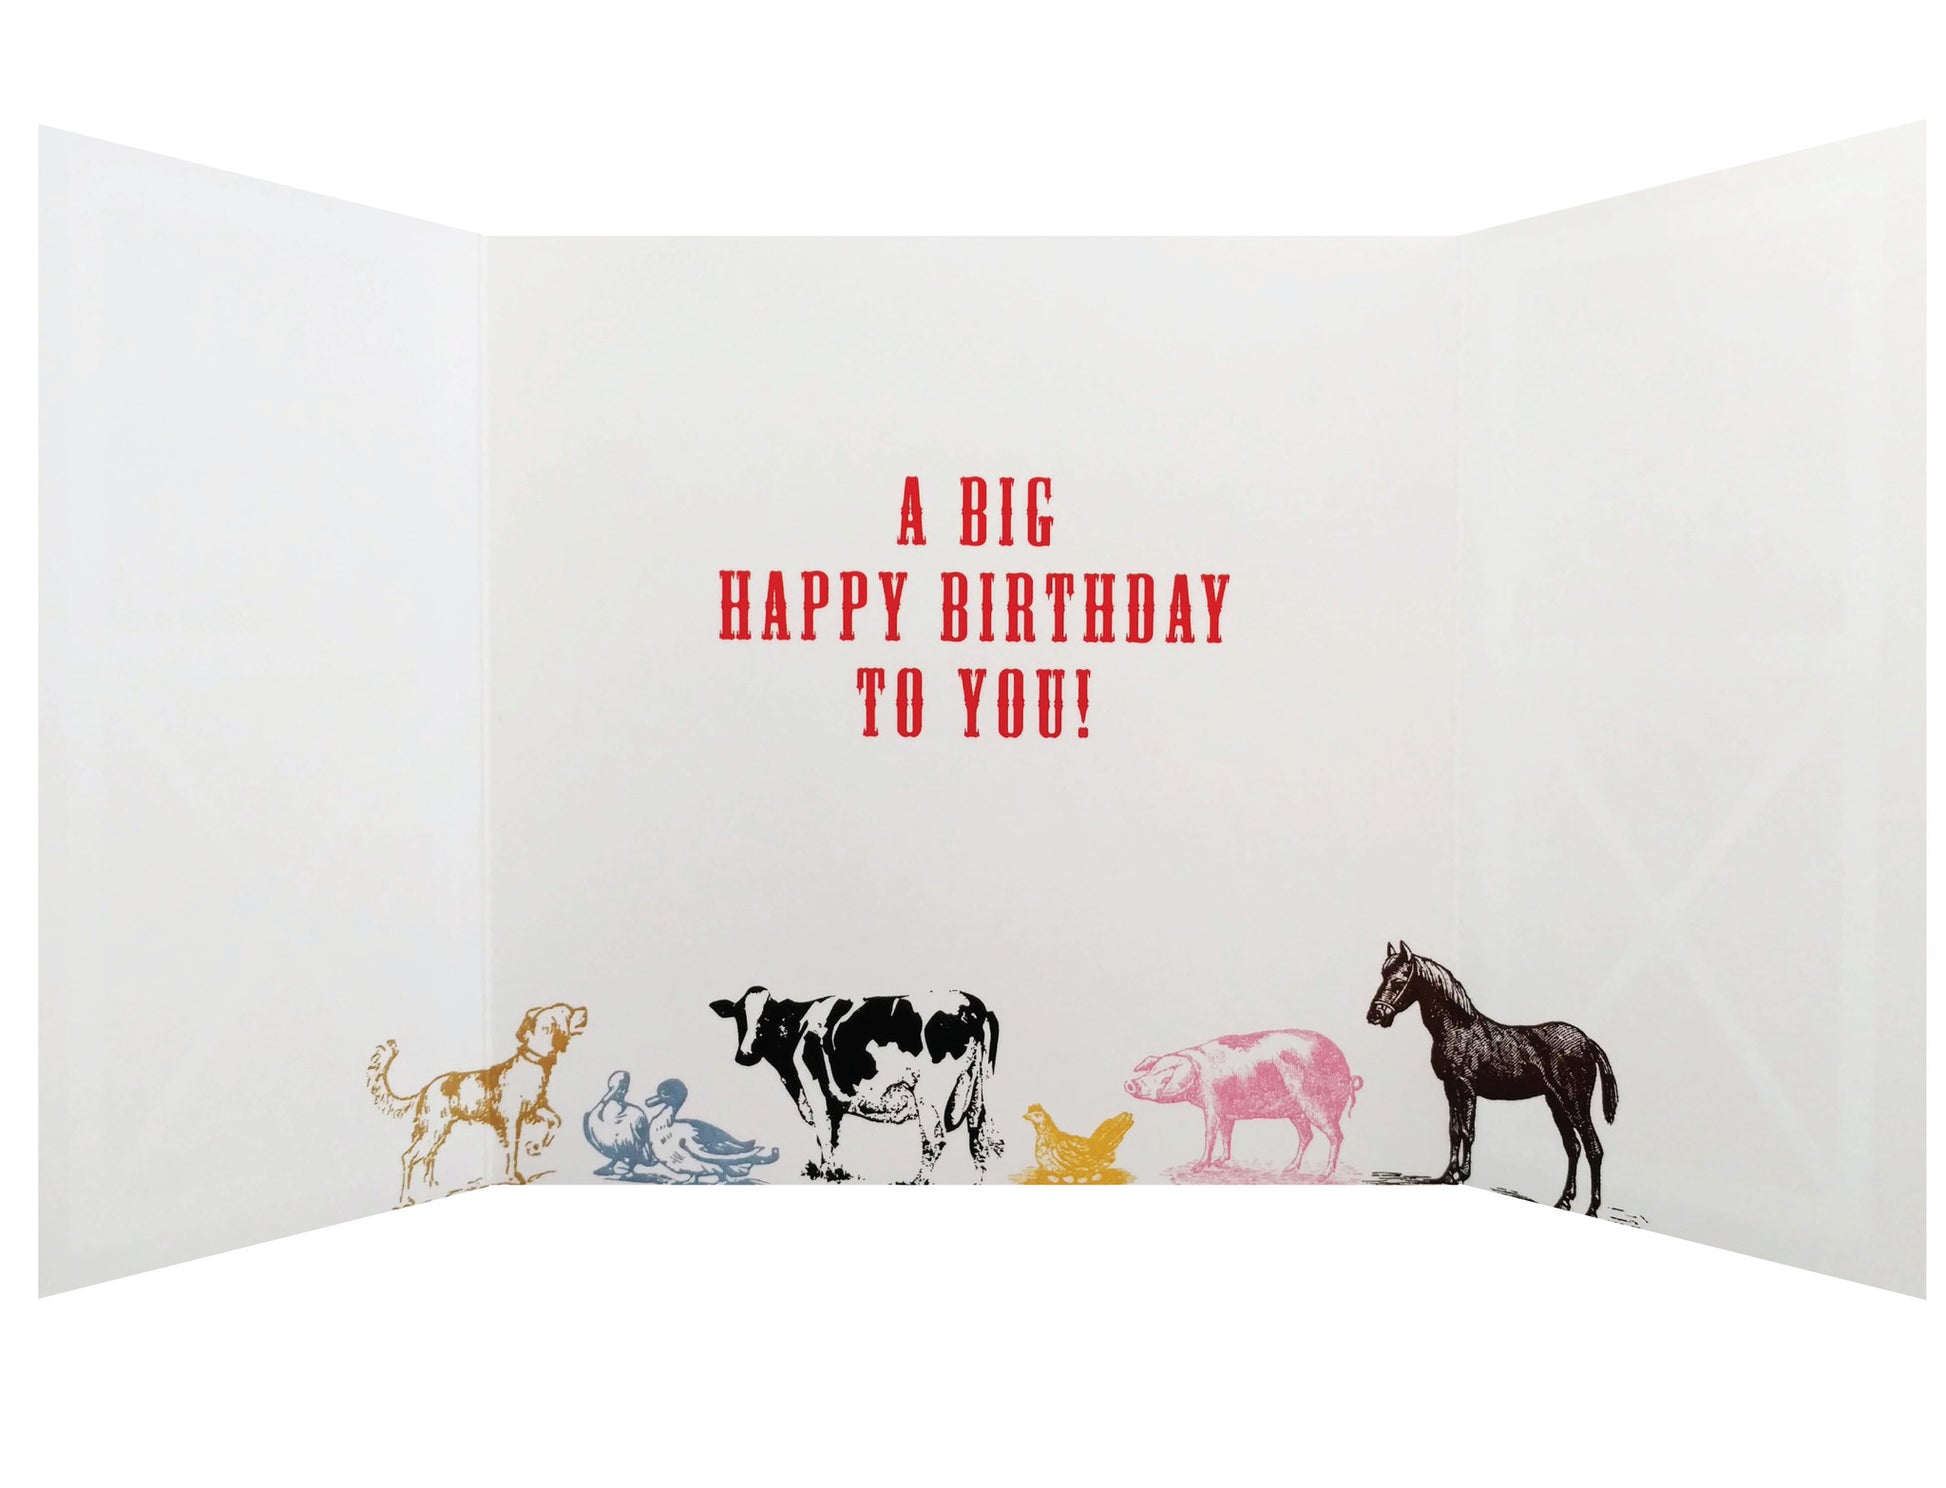 Red Barn and Animals Birthday Card - Idea Chíc